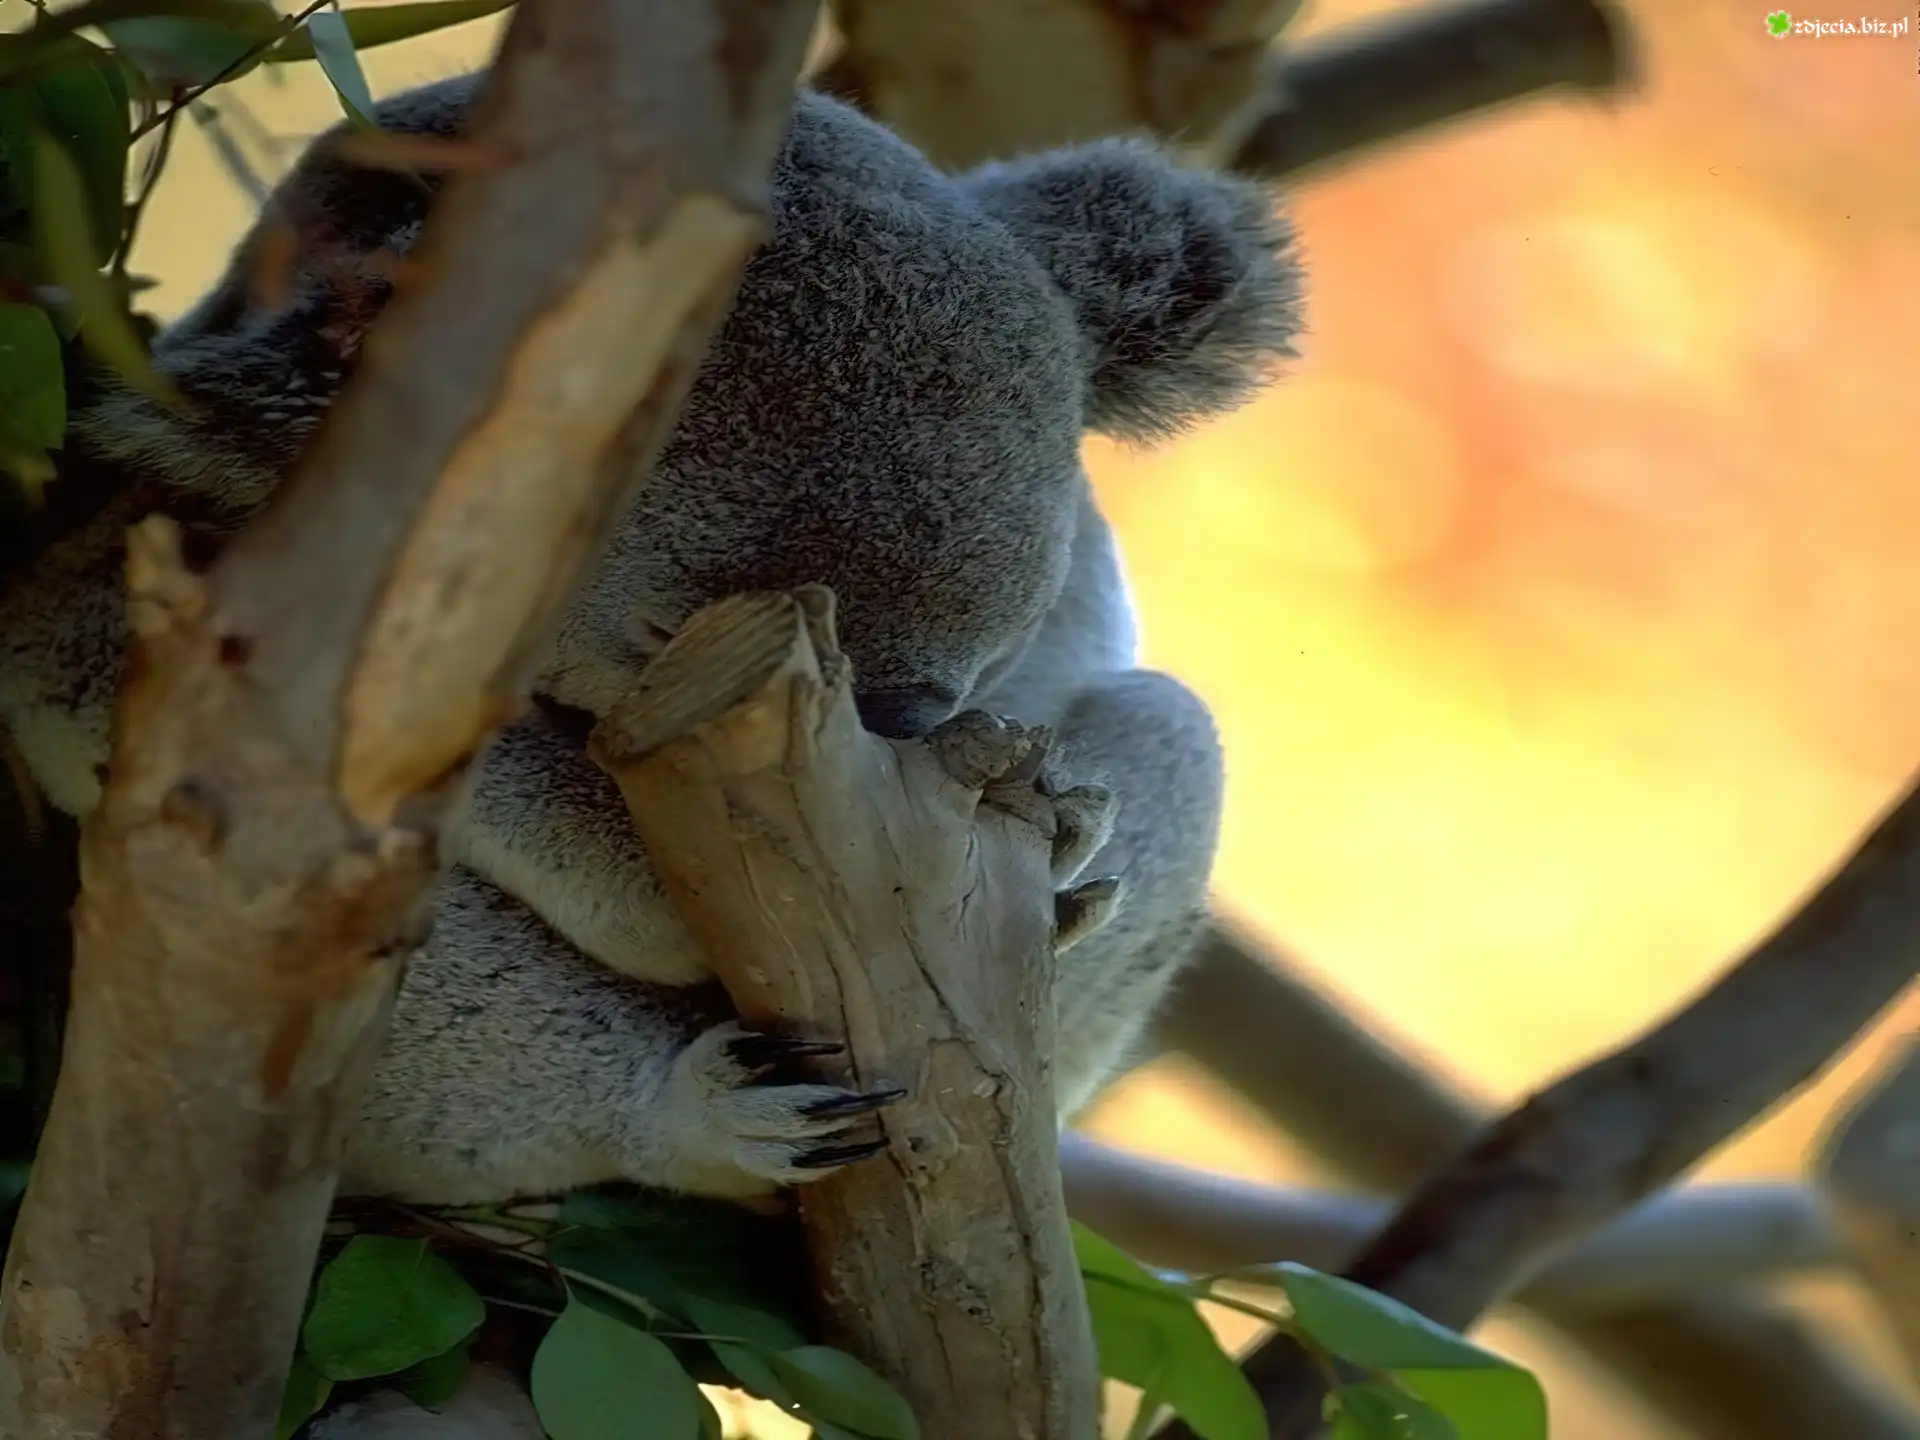 Miś koala